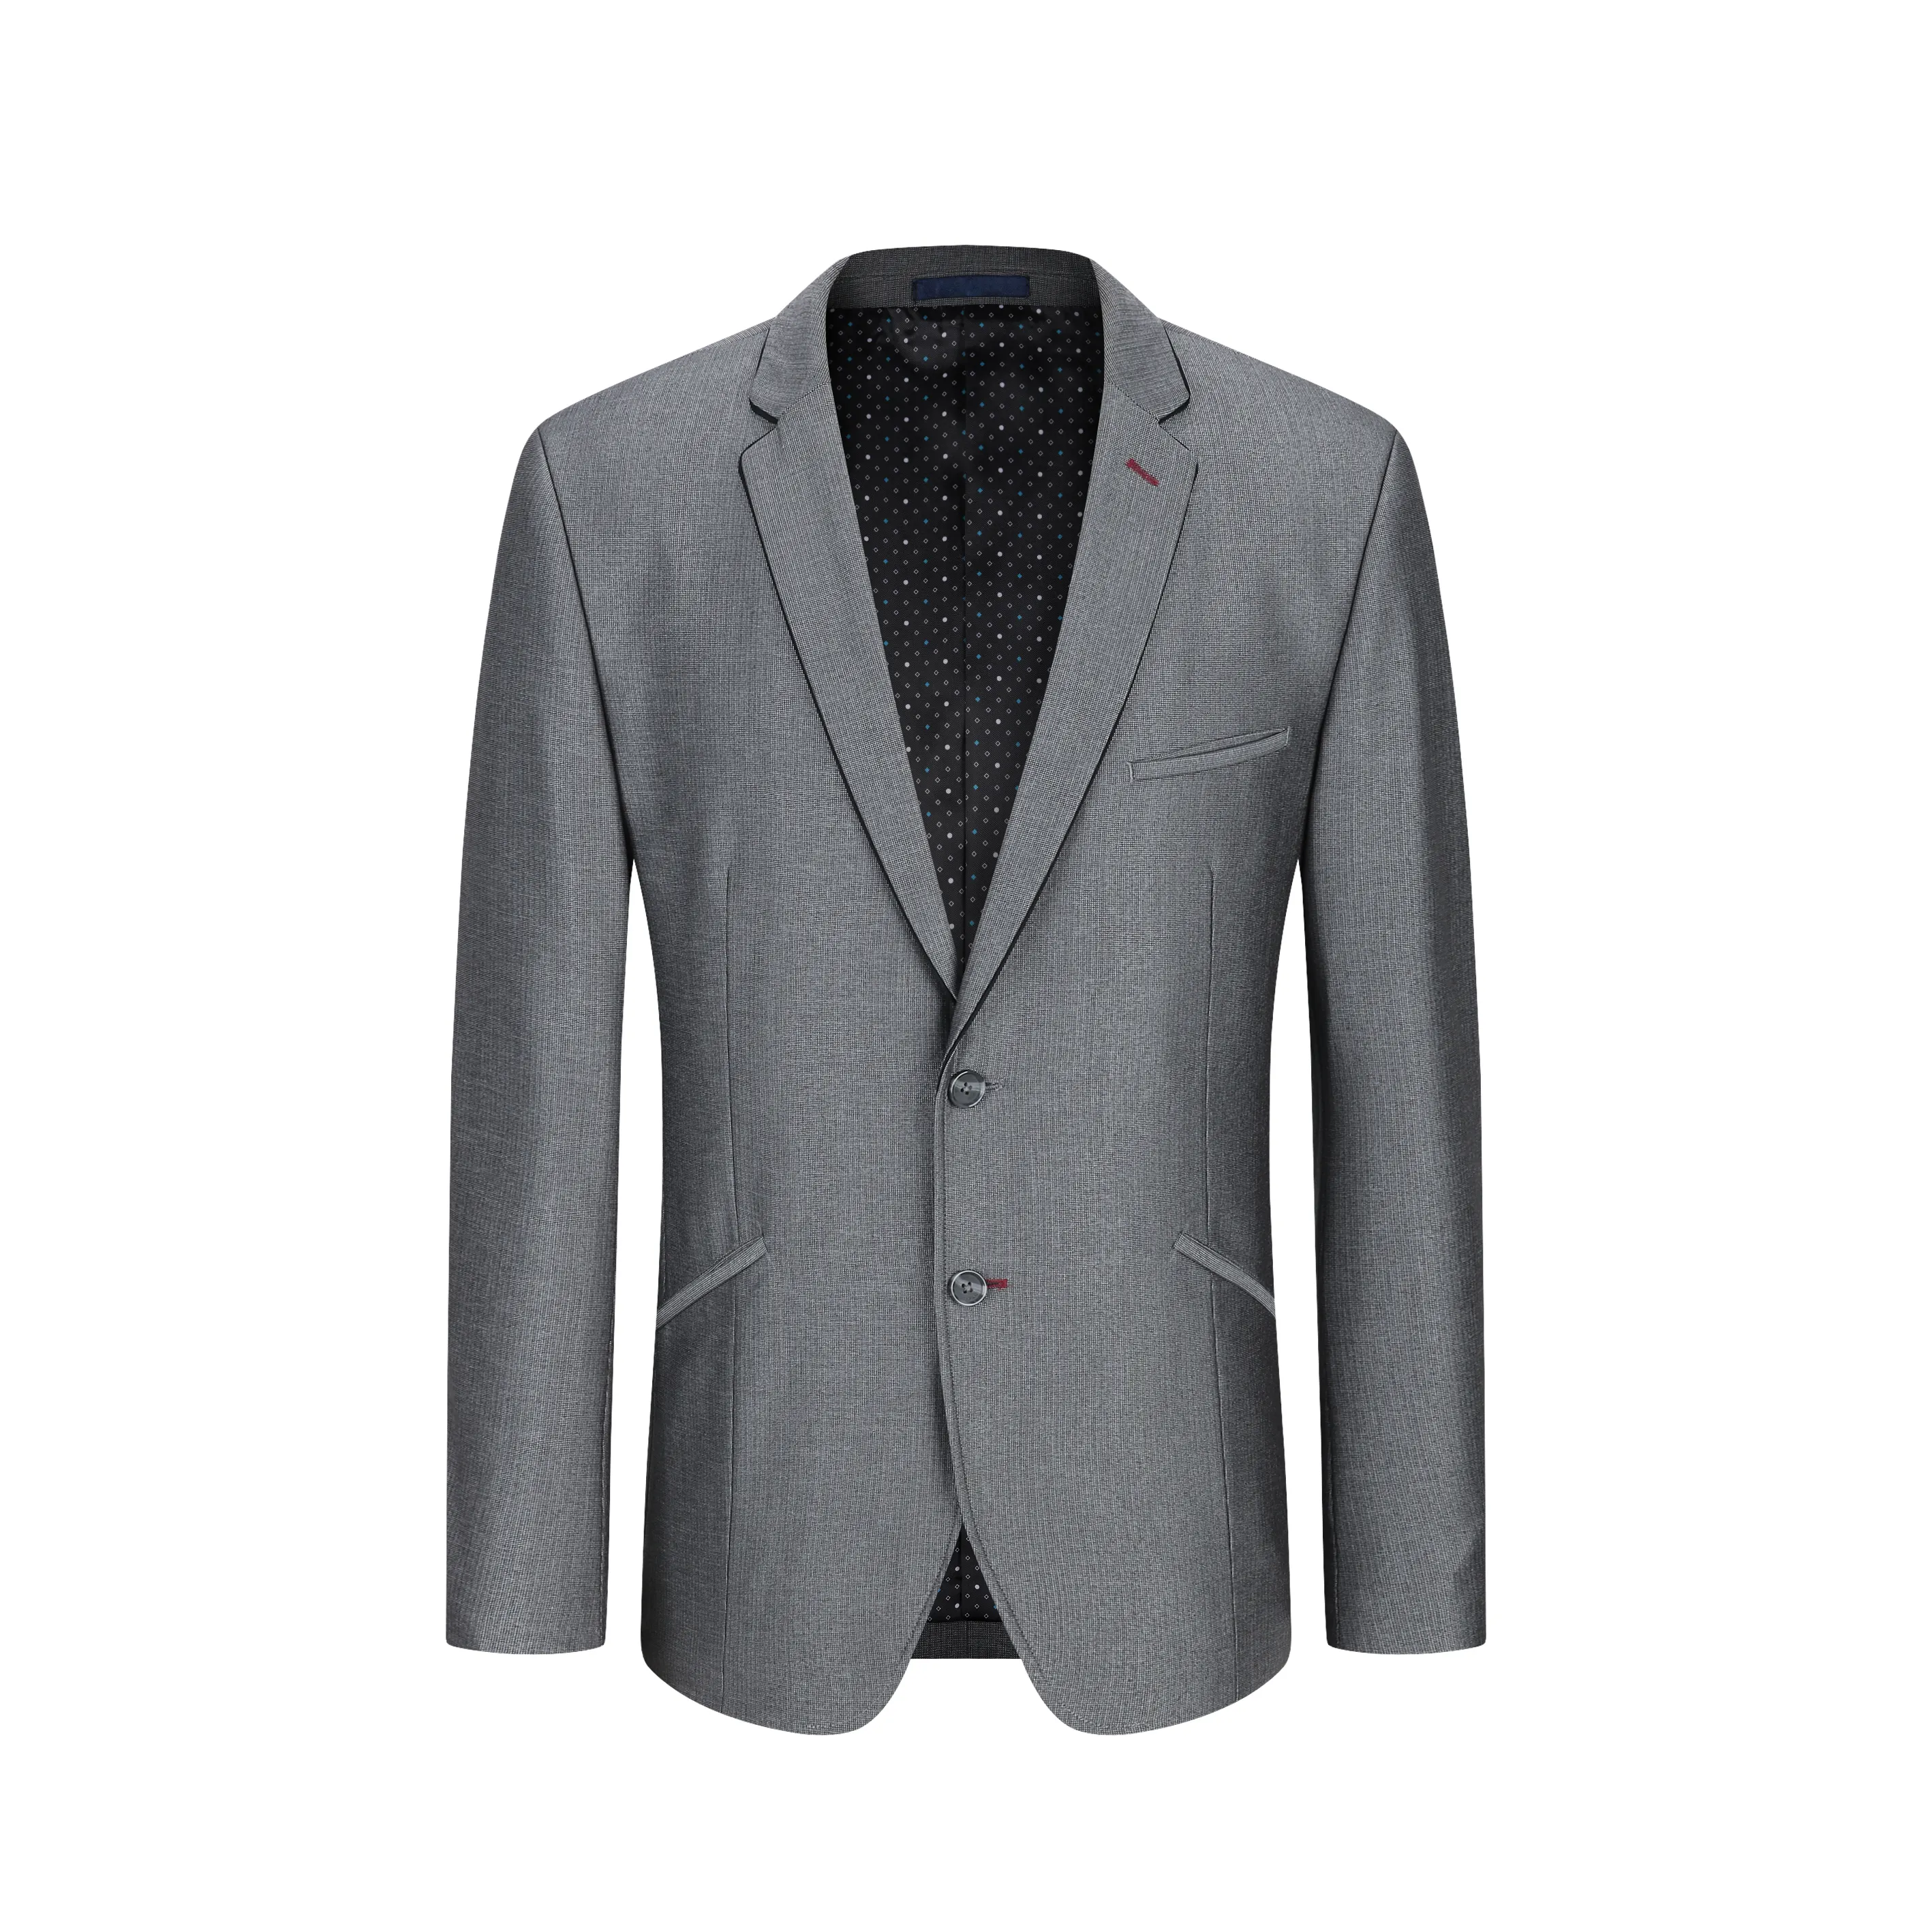 Italian Men's Slim Suit Men's Business casual Wedding grey Suit Blazer Classic Men's Top